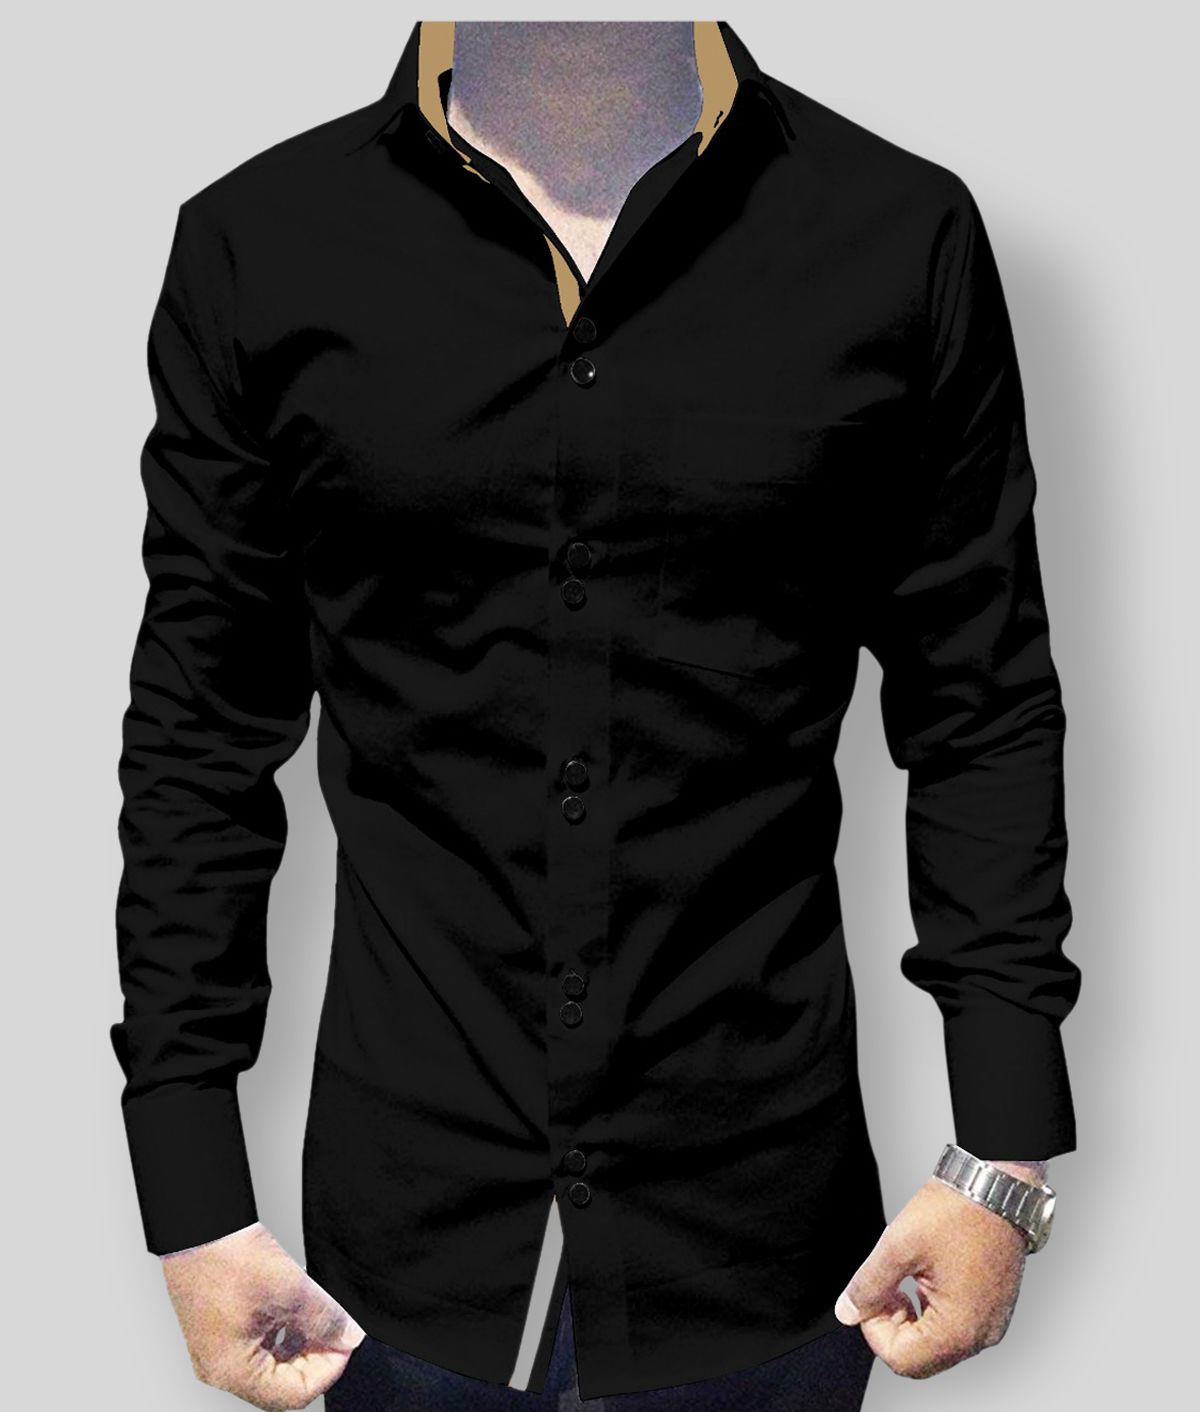 P&V - Black Cotton Blend Slim Fit Men's Casual Shirt (Pack of 1)